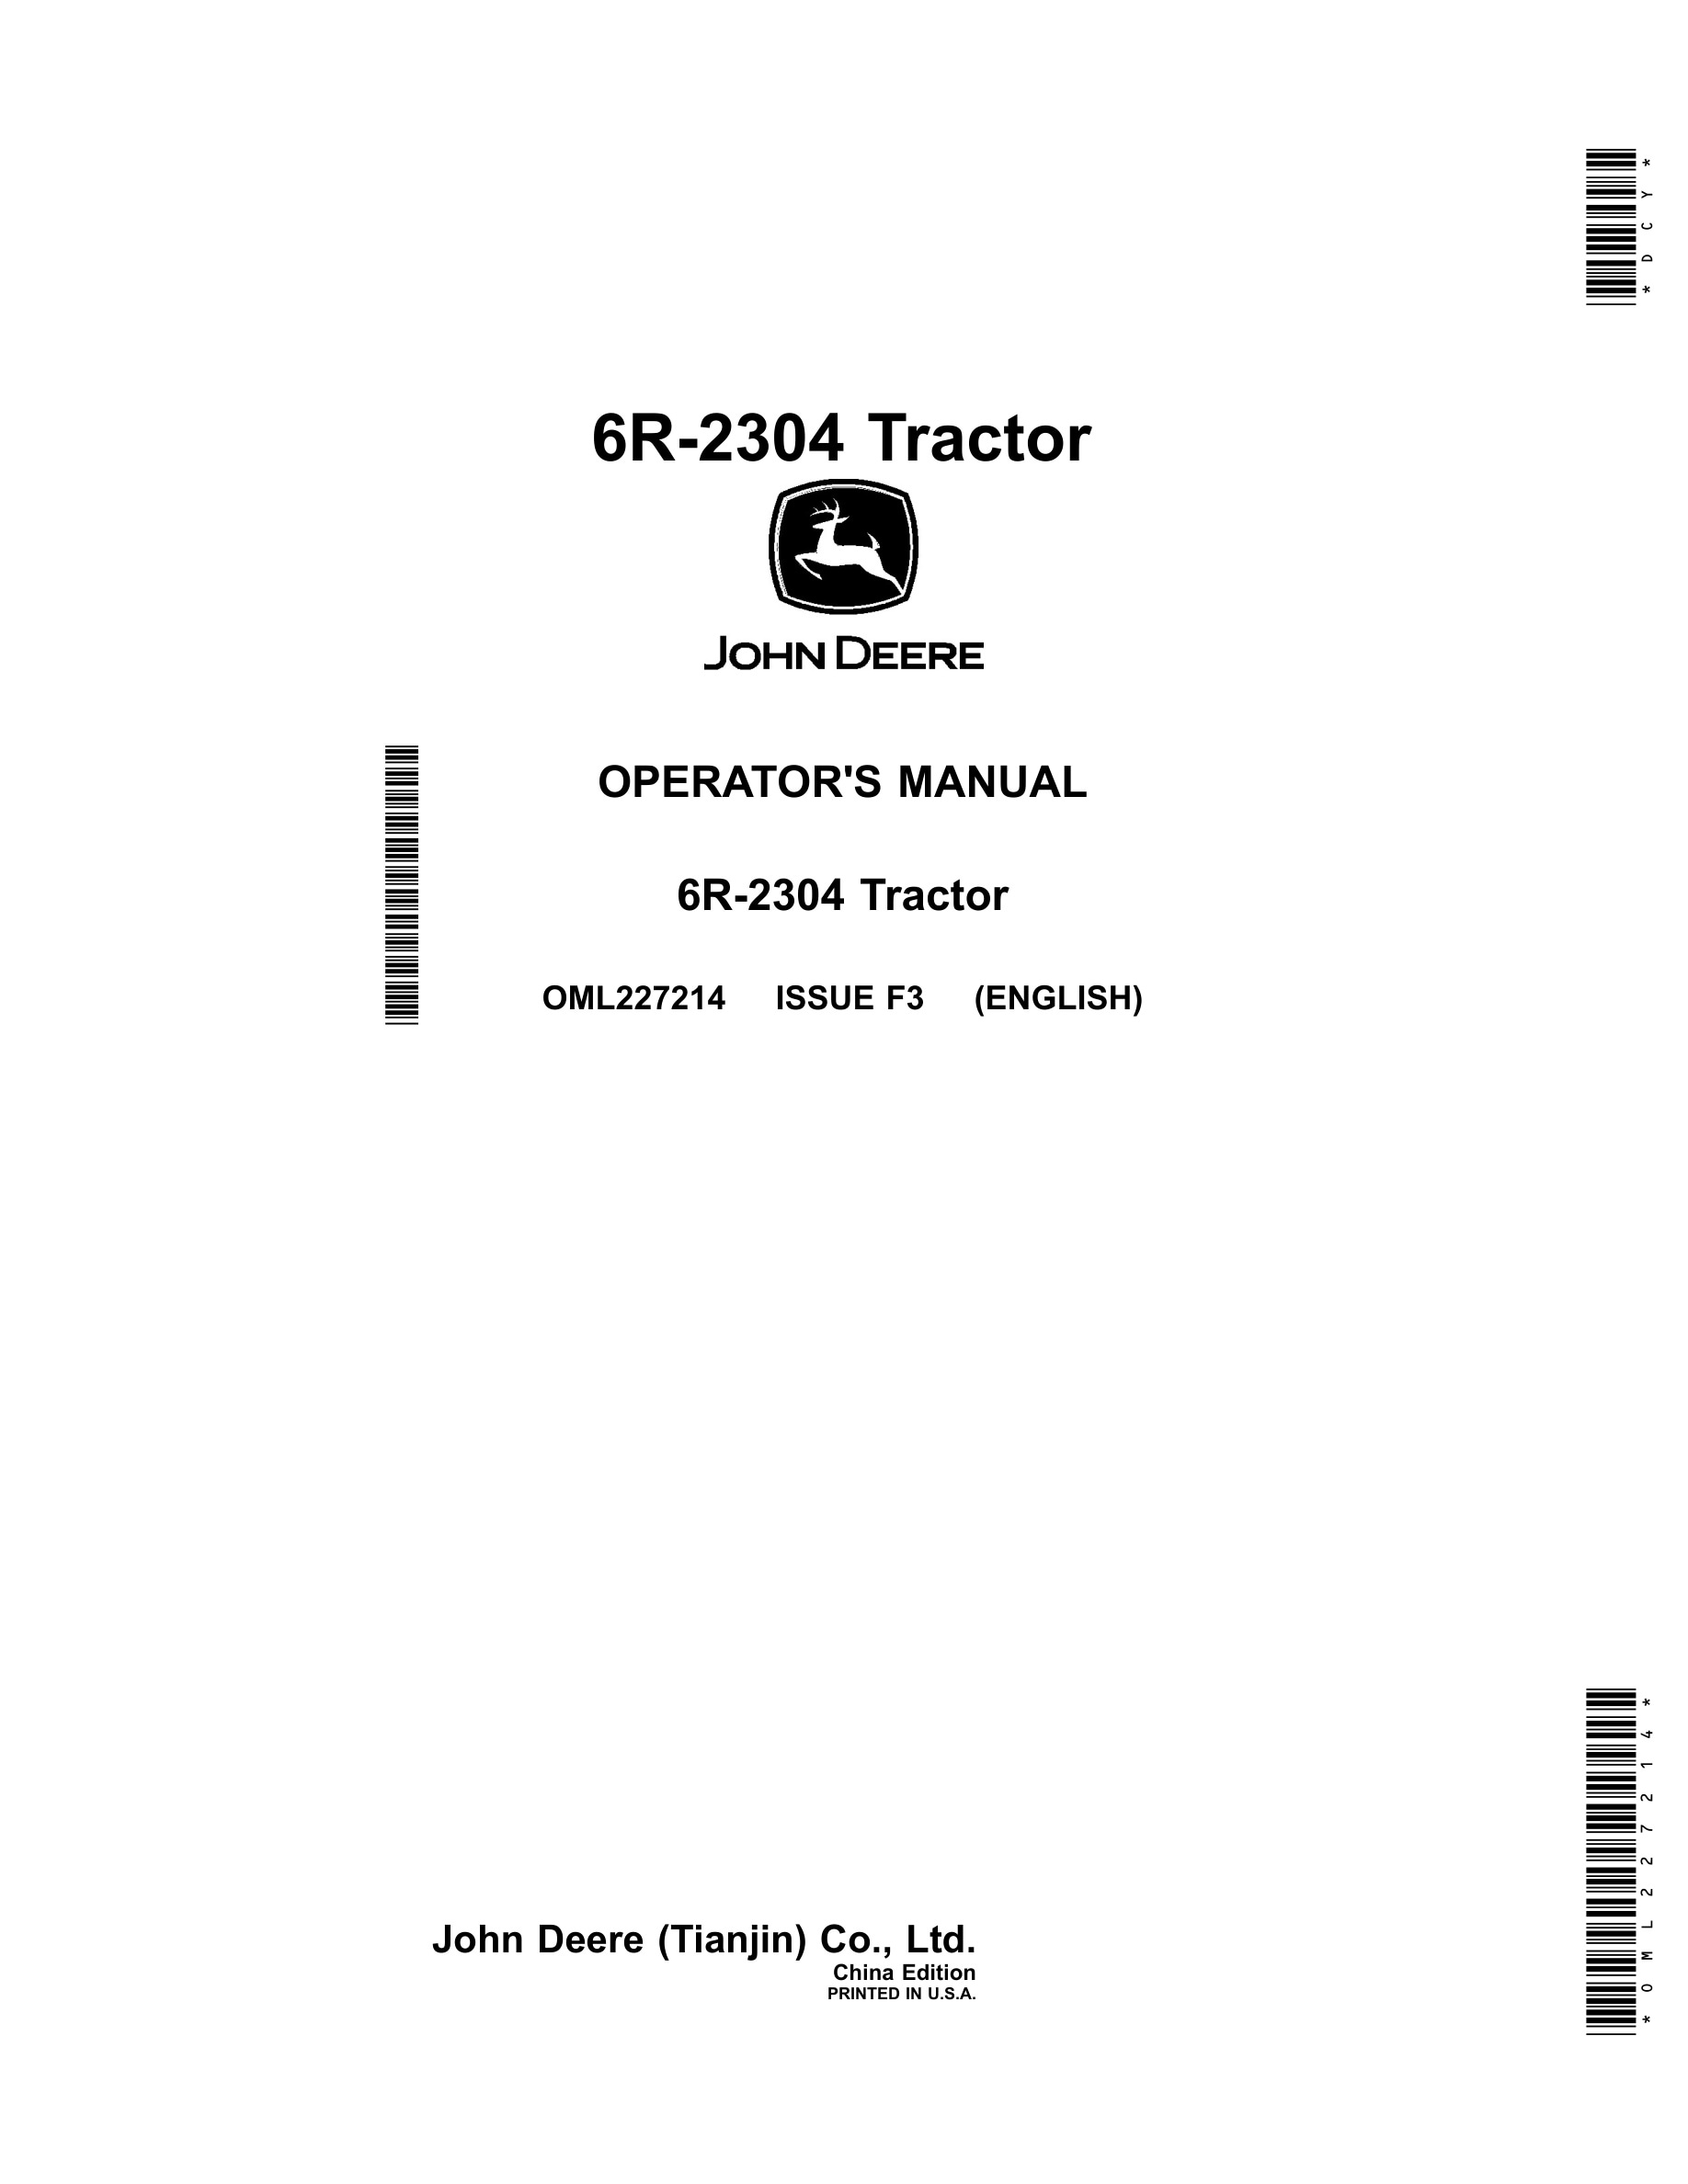 John Deere 6r-2304 Tractors Operator Manual OML227214-1